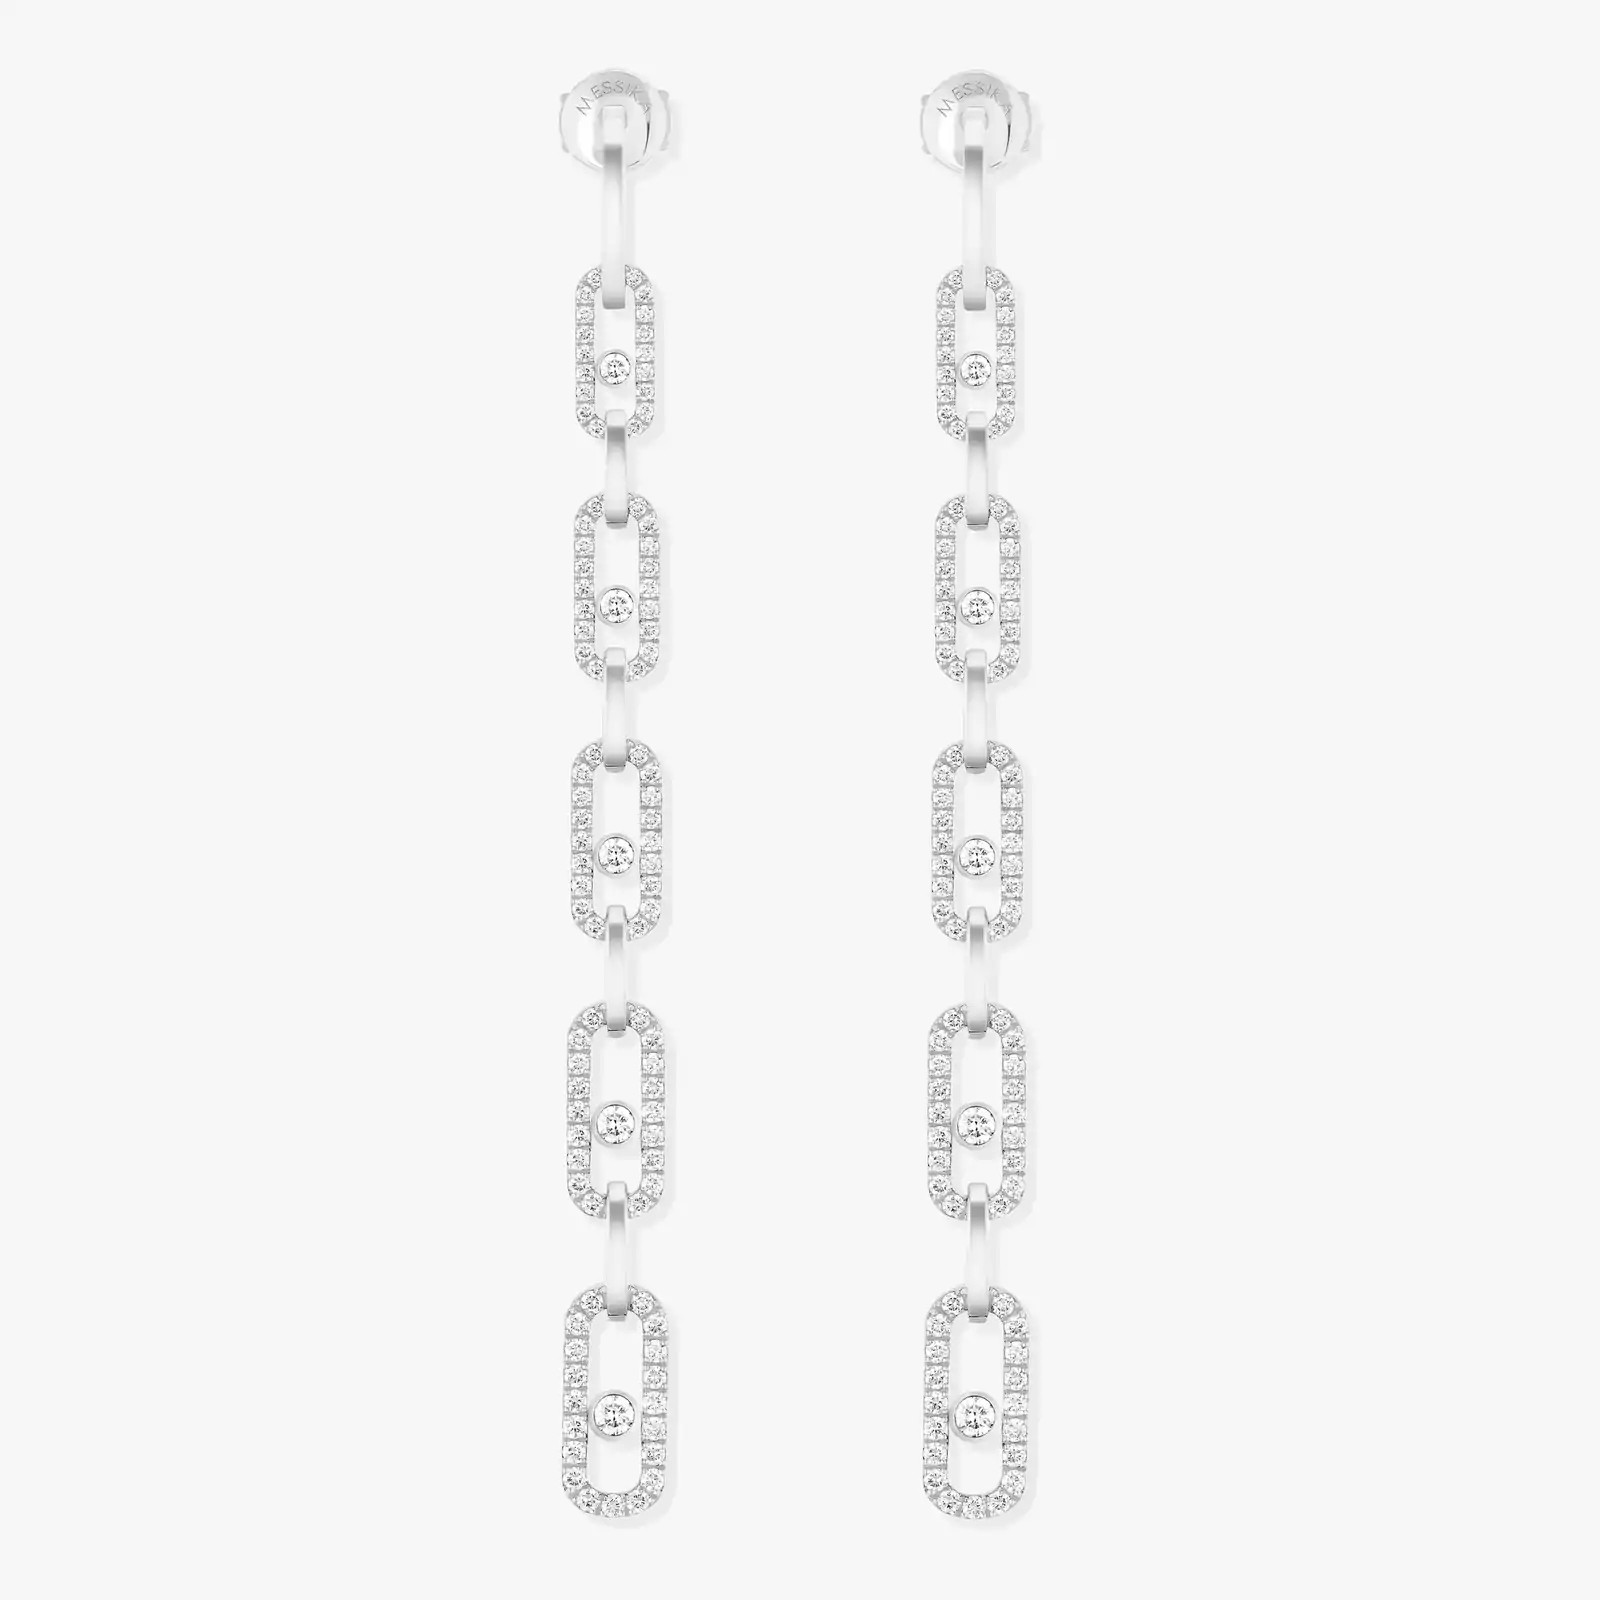 Move Link Multi Pendant Earrings White Gold For Her Diamond Earrings 12011-WG